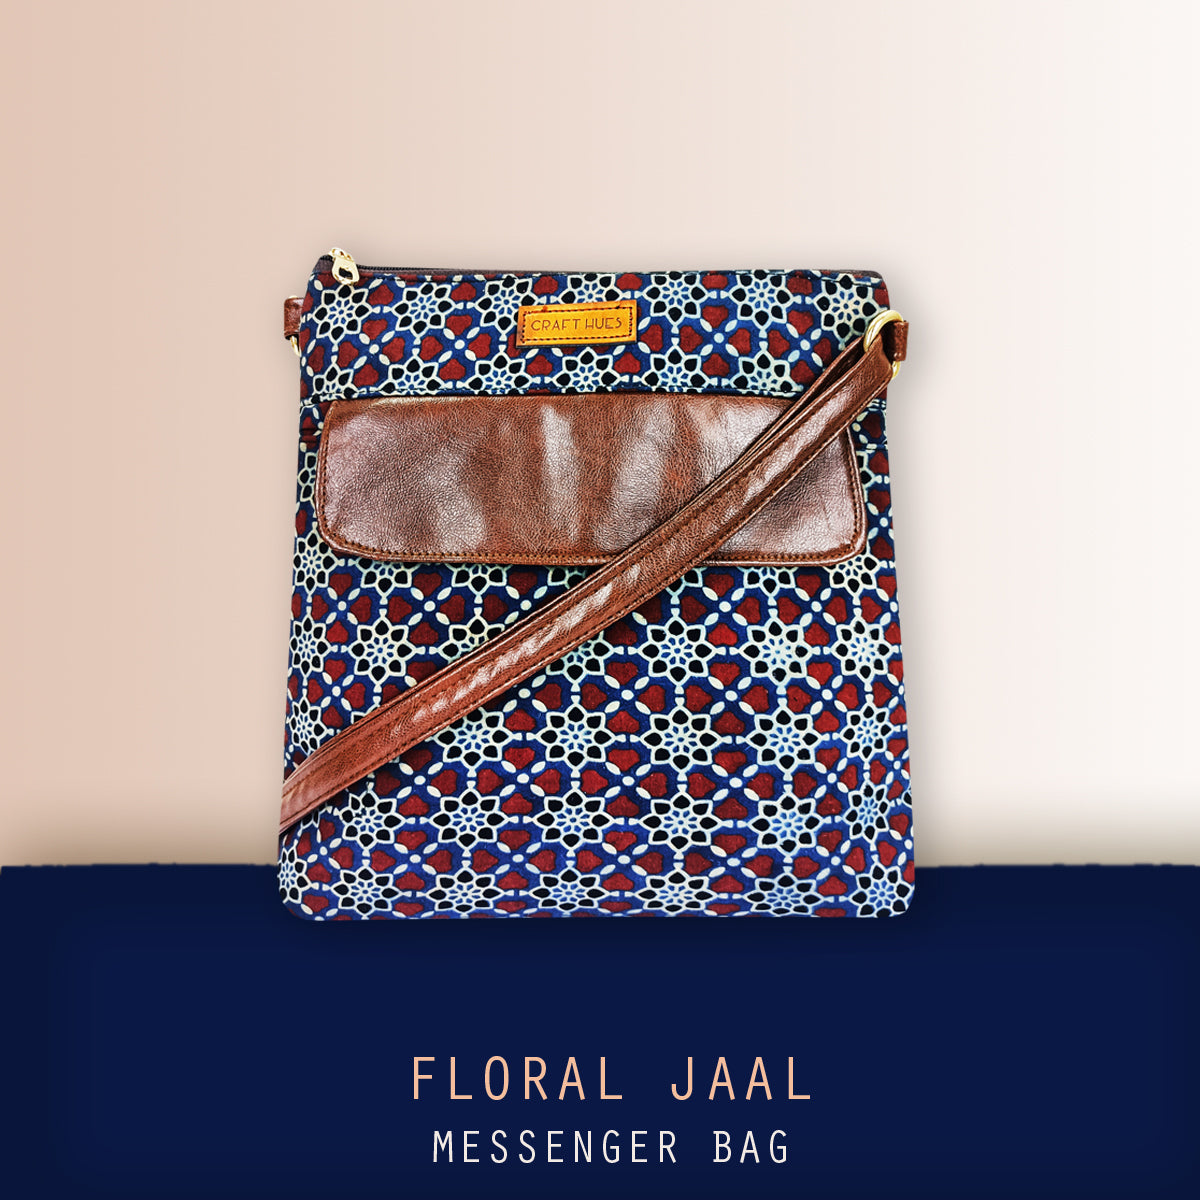 Floral Jaal Messenger Bag